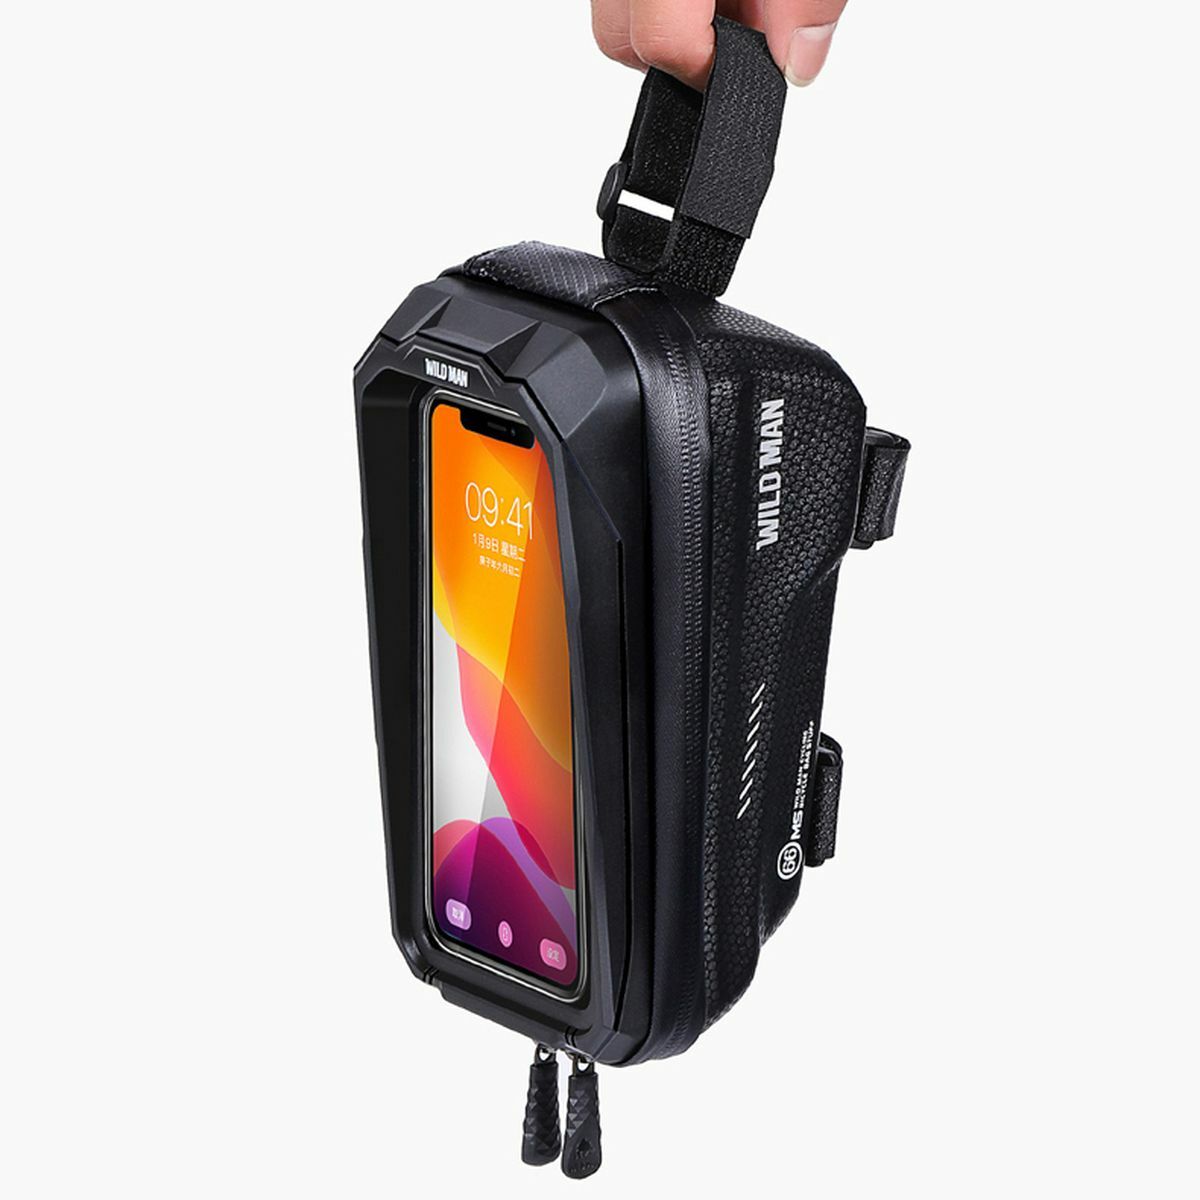 Kép 3/9 - WILDMAN Bicycle Bag MS66 vázra szerelhető, vízálló, merevfalú kerékpáros táska telefontartóval, 4.7-6.7", 1L, fekete WILDMAN-MS66-1L